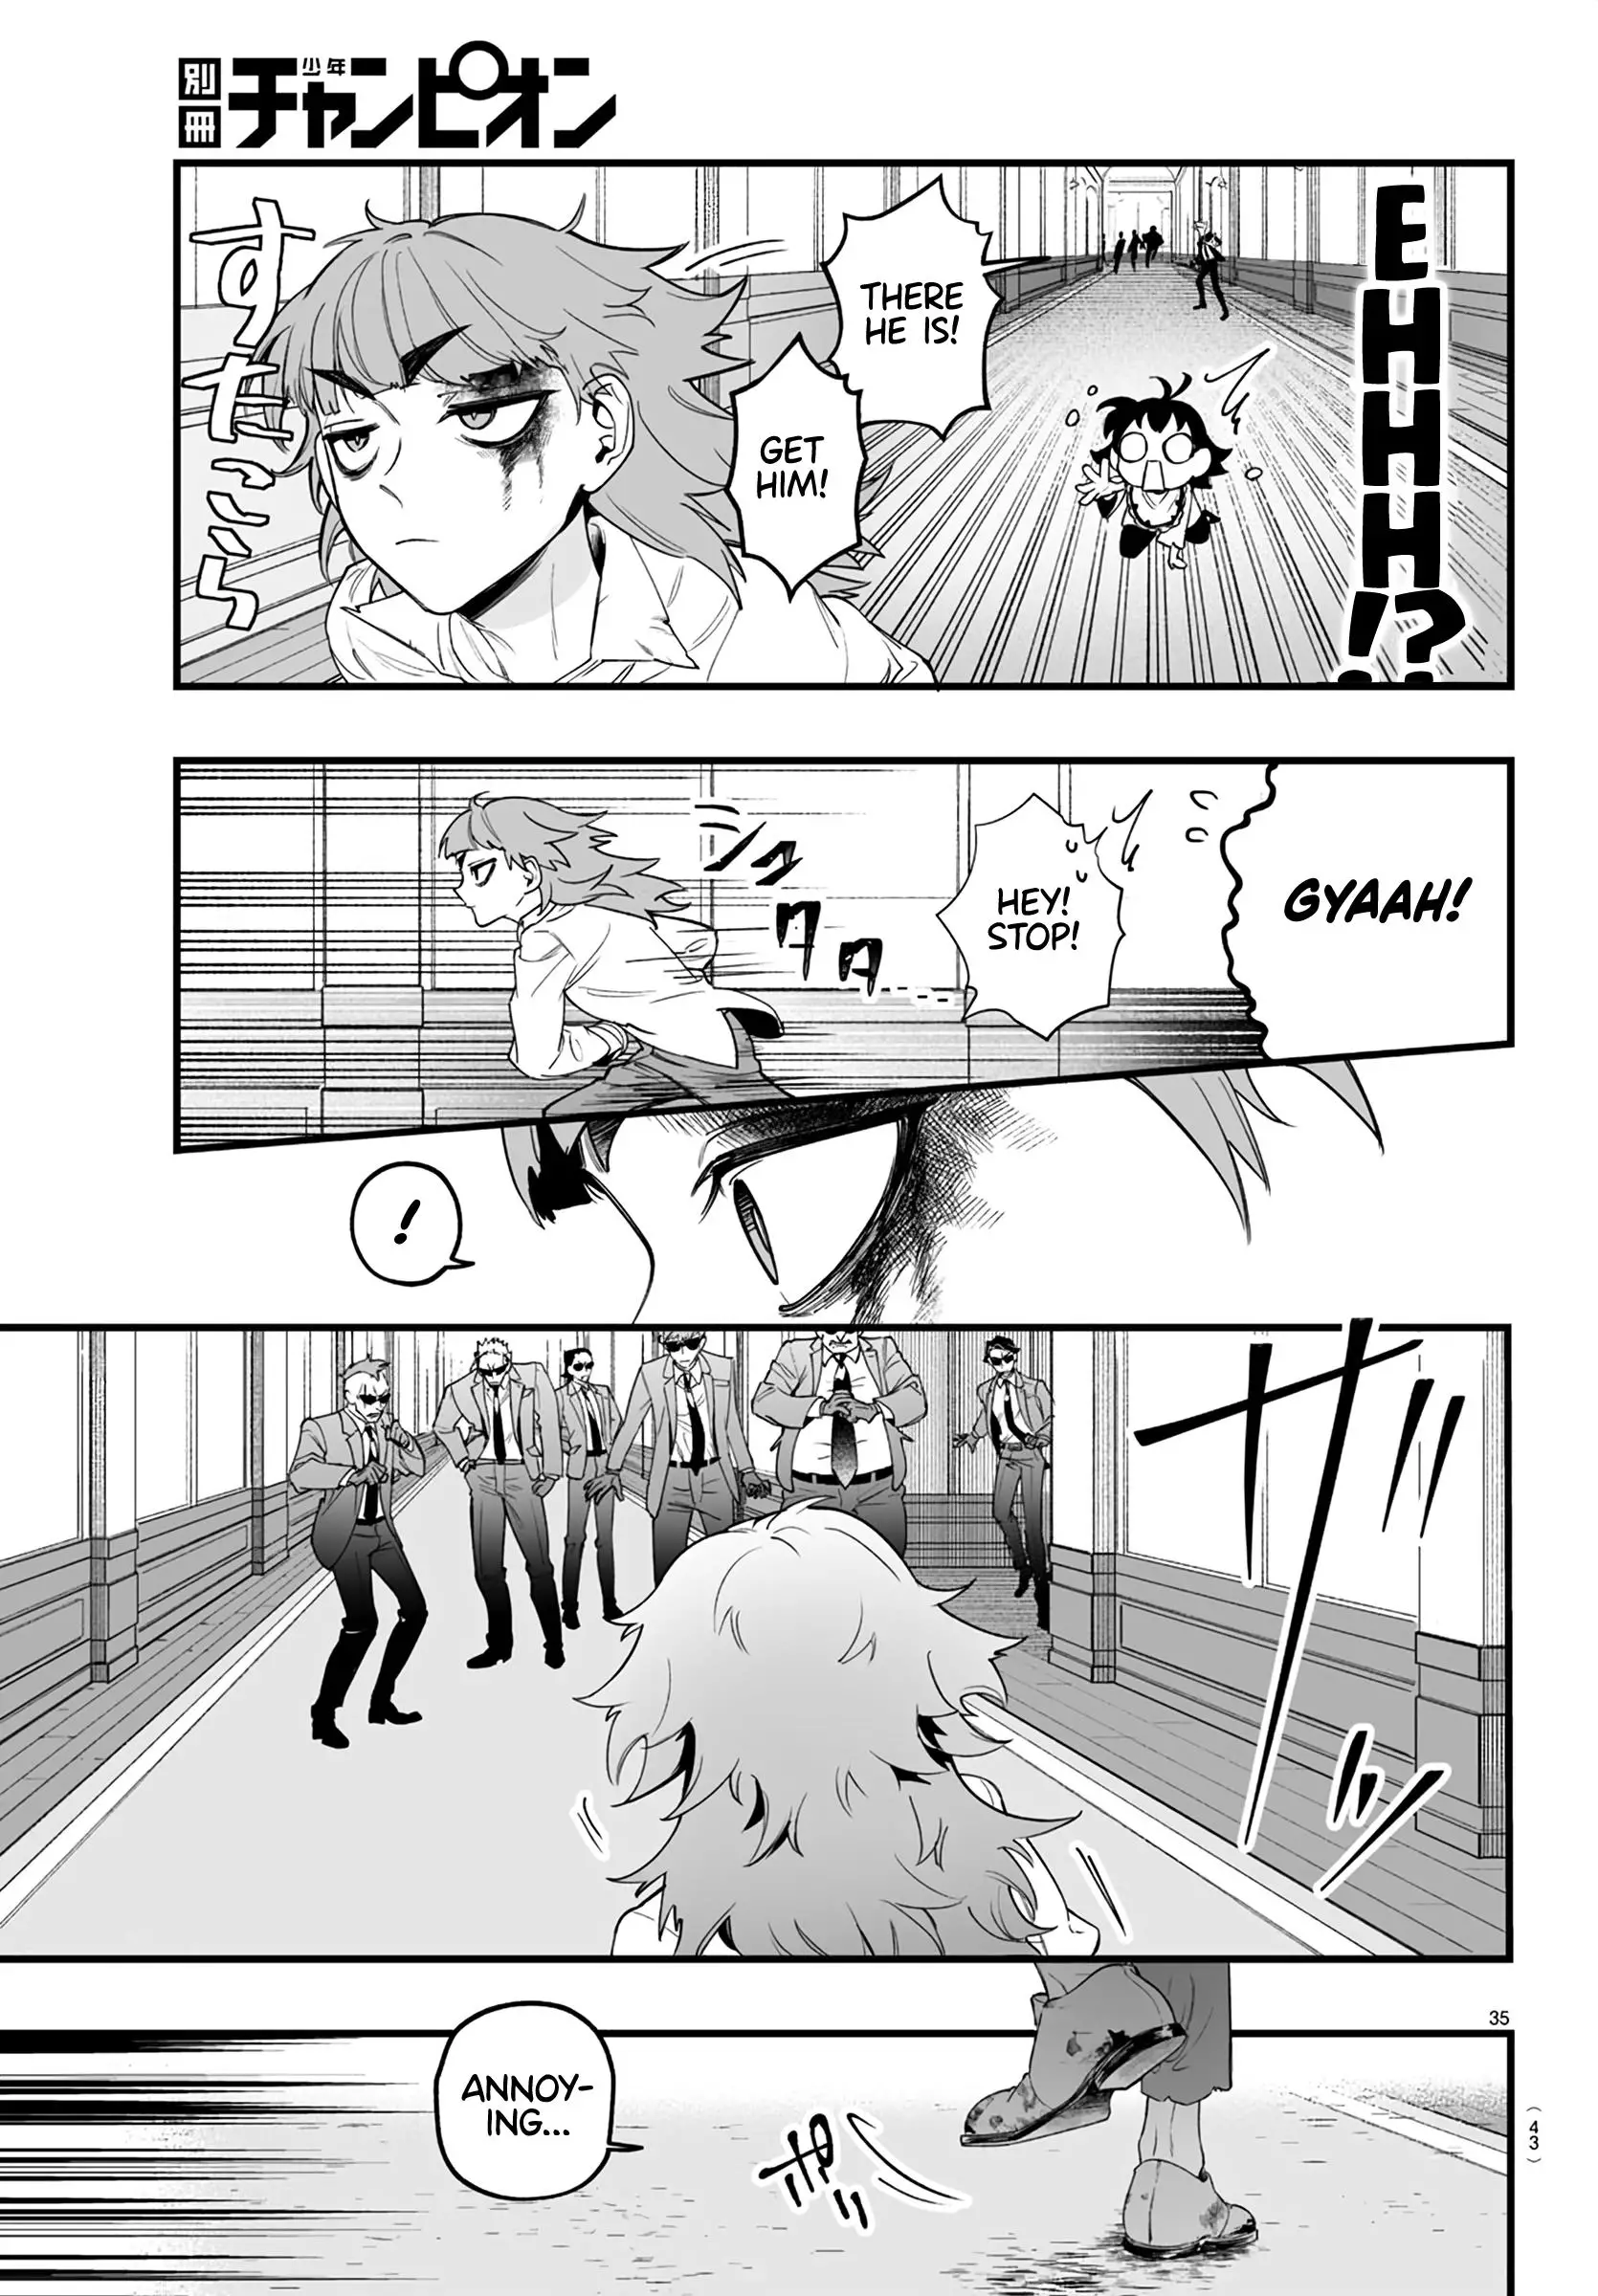 Mairimashita! Iruma-Kun Mafia Au - 1 page 37-d94c06cc